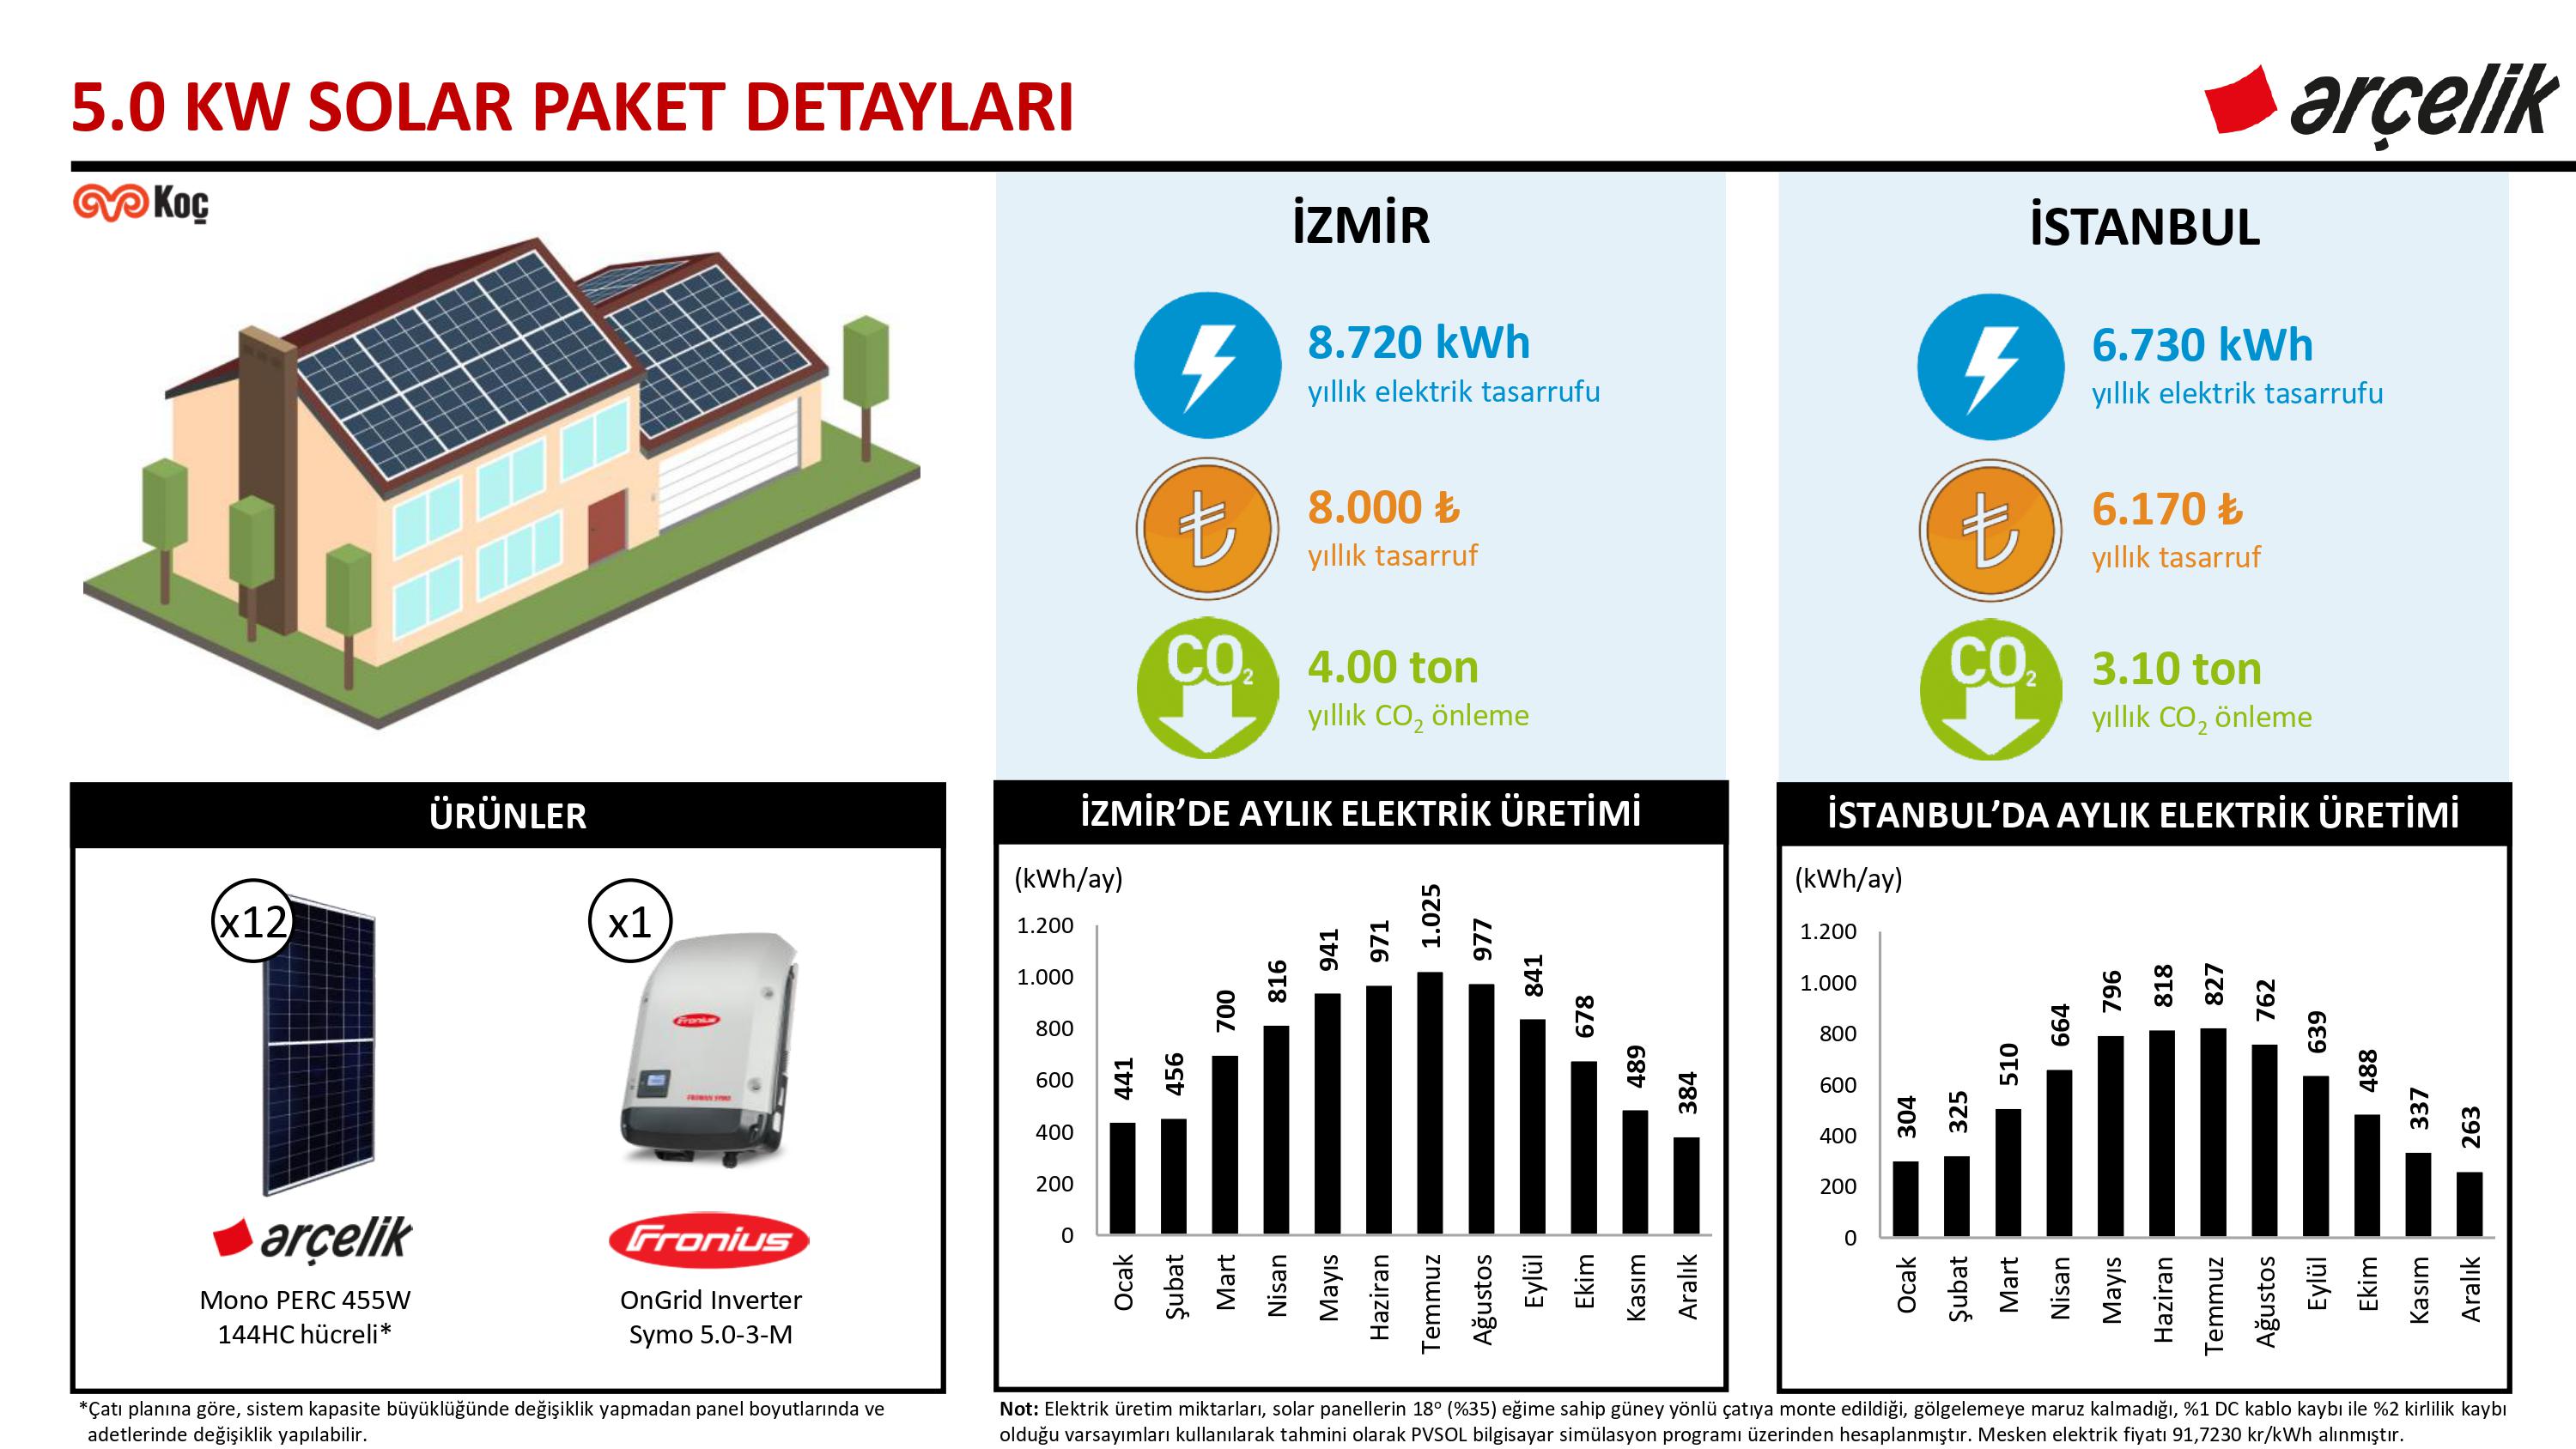 Arçelik 5.0 kW Solar Paket ve Yapı Kredi Leasing Detayları